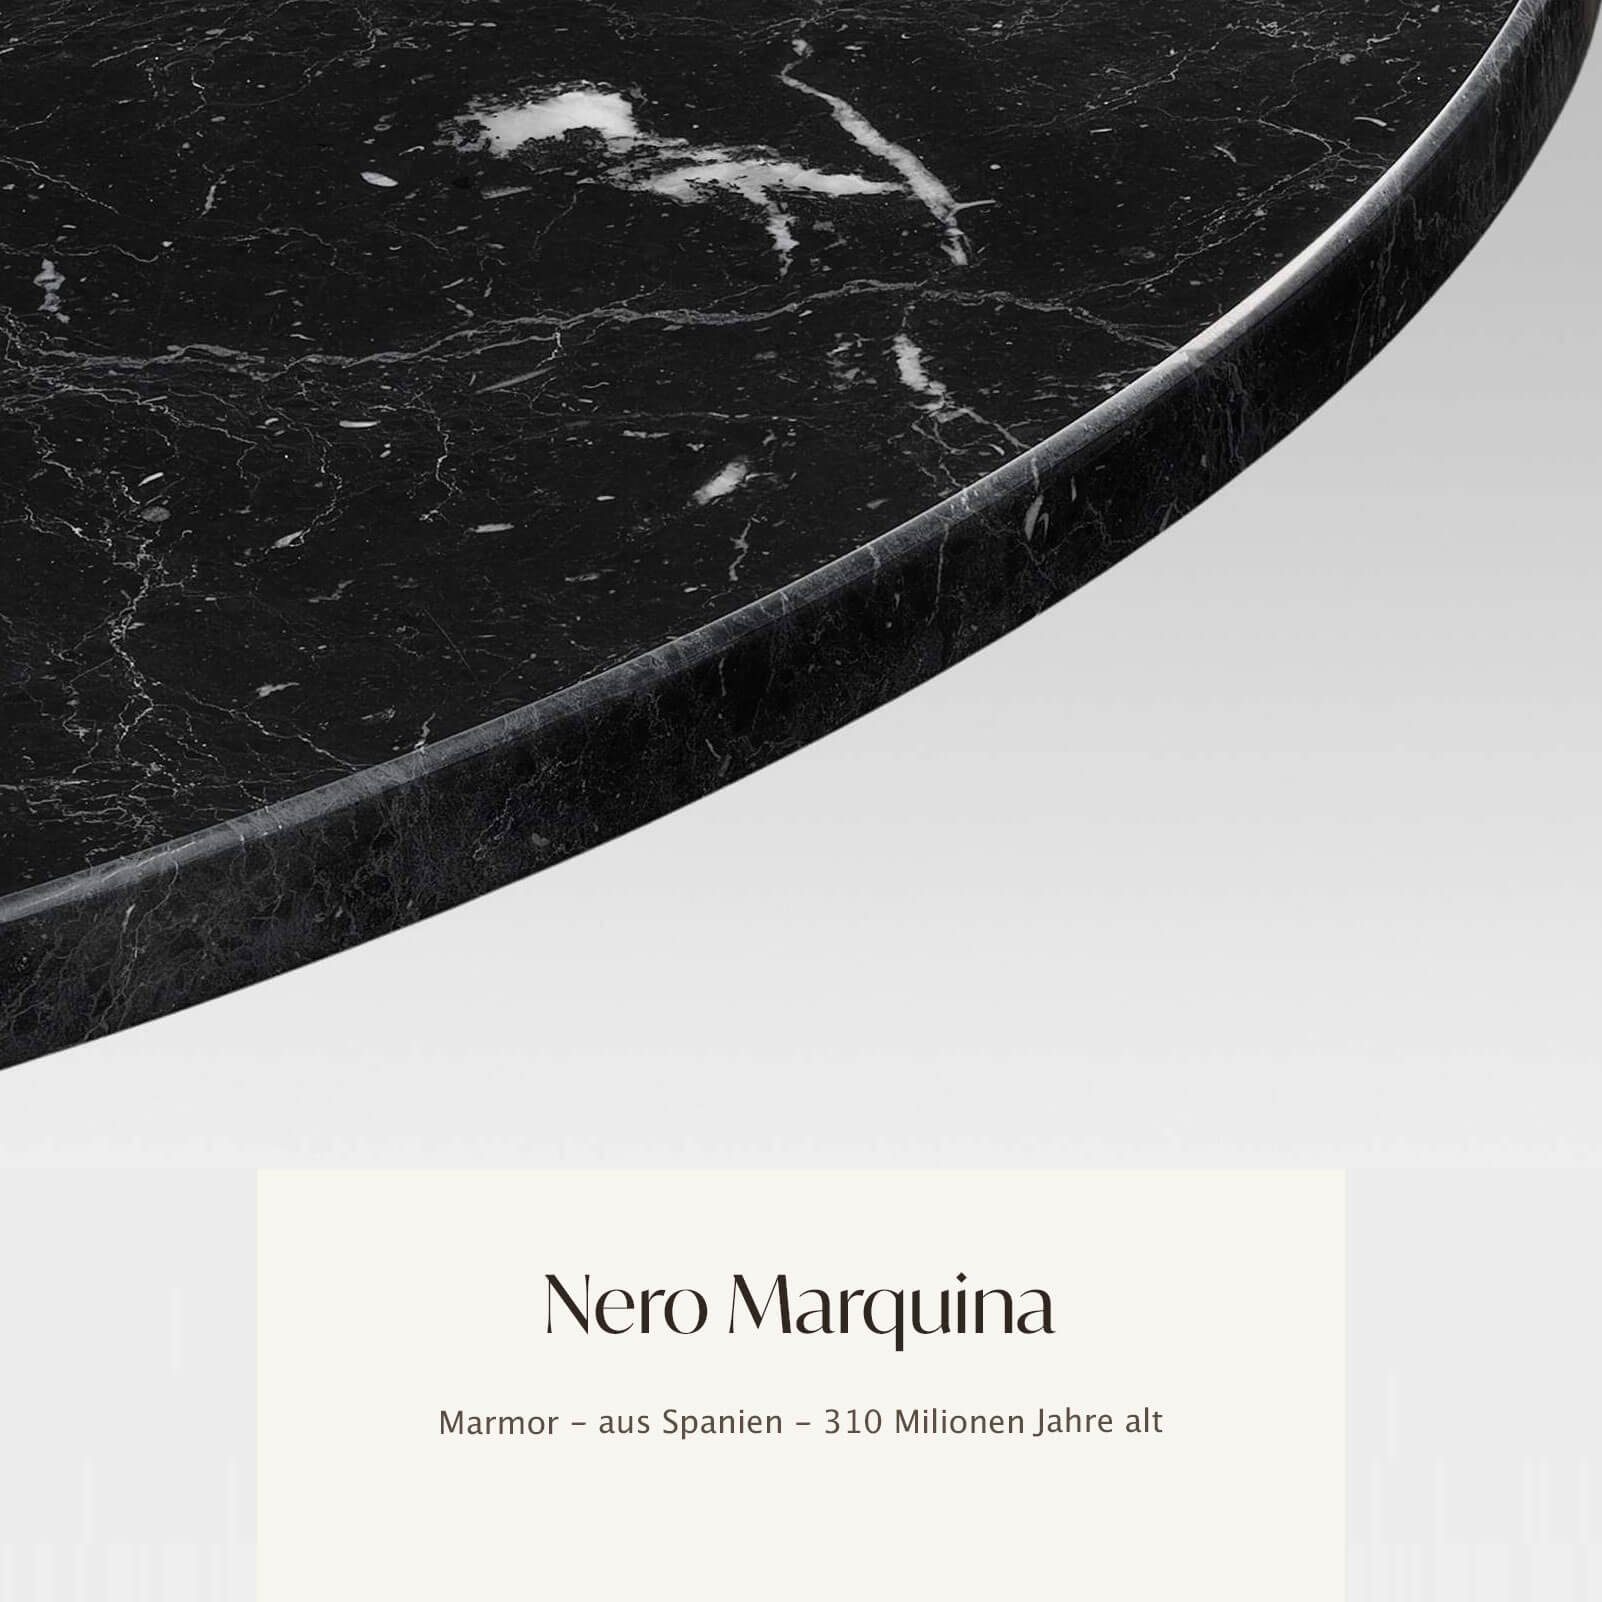 MAGNA Atelier Esstisch BERGEN OVAL mit ECHTEM MARMOR, Esstisch oval, schwarz weiß Metallgestell, 200x100x75cm Nero Marquina